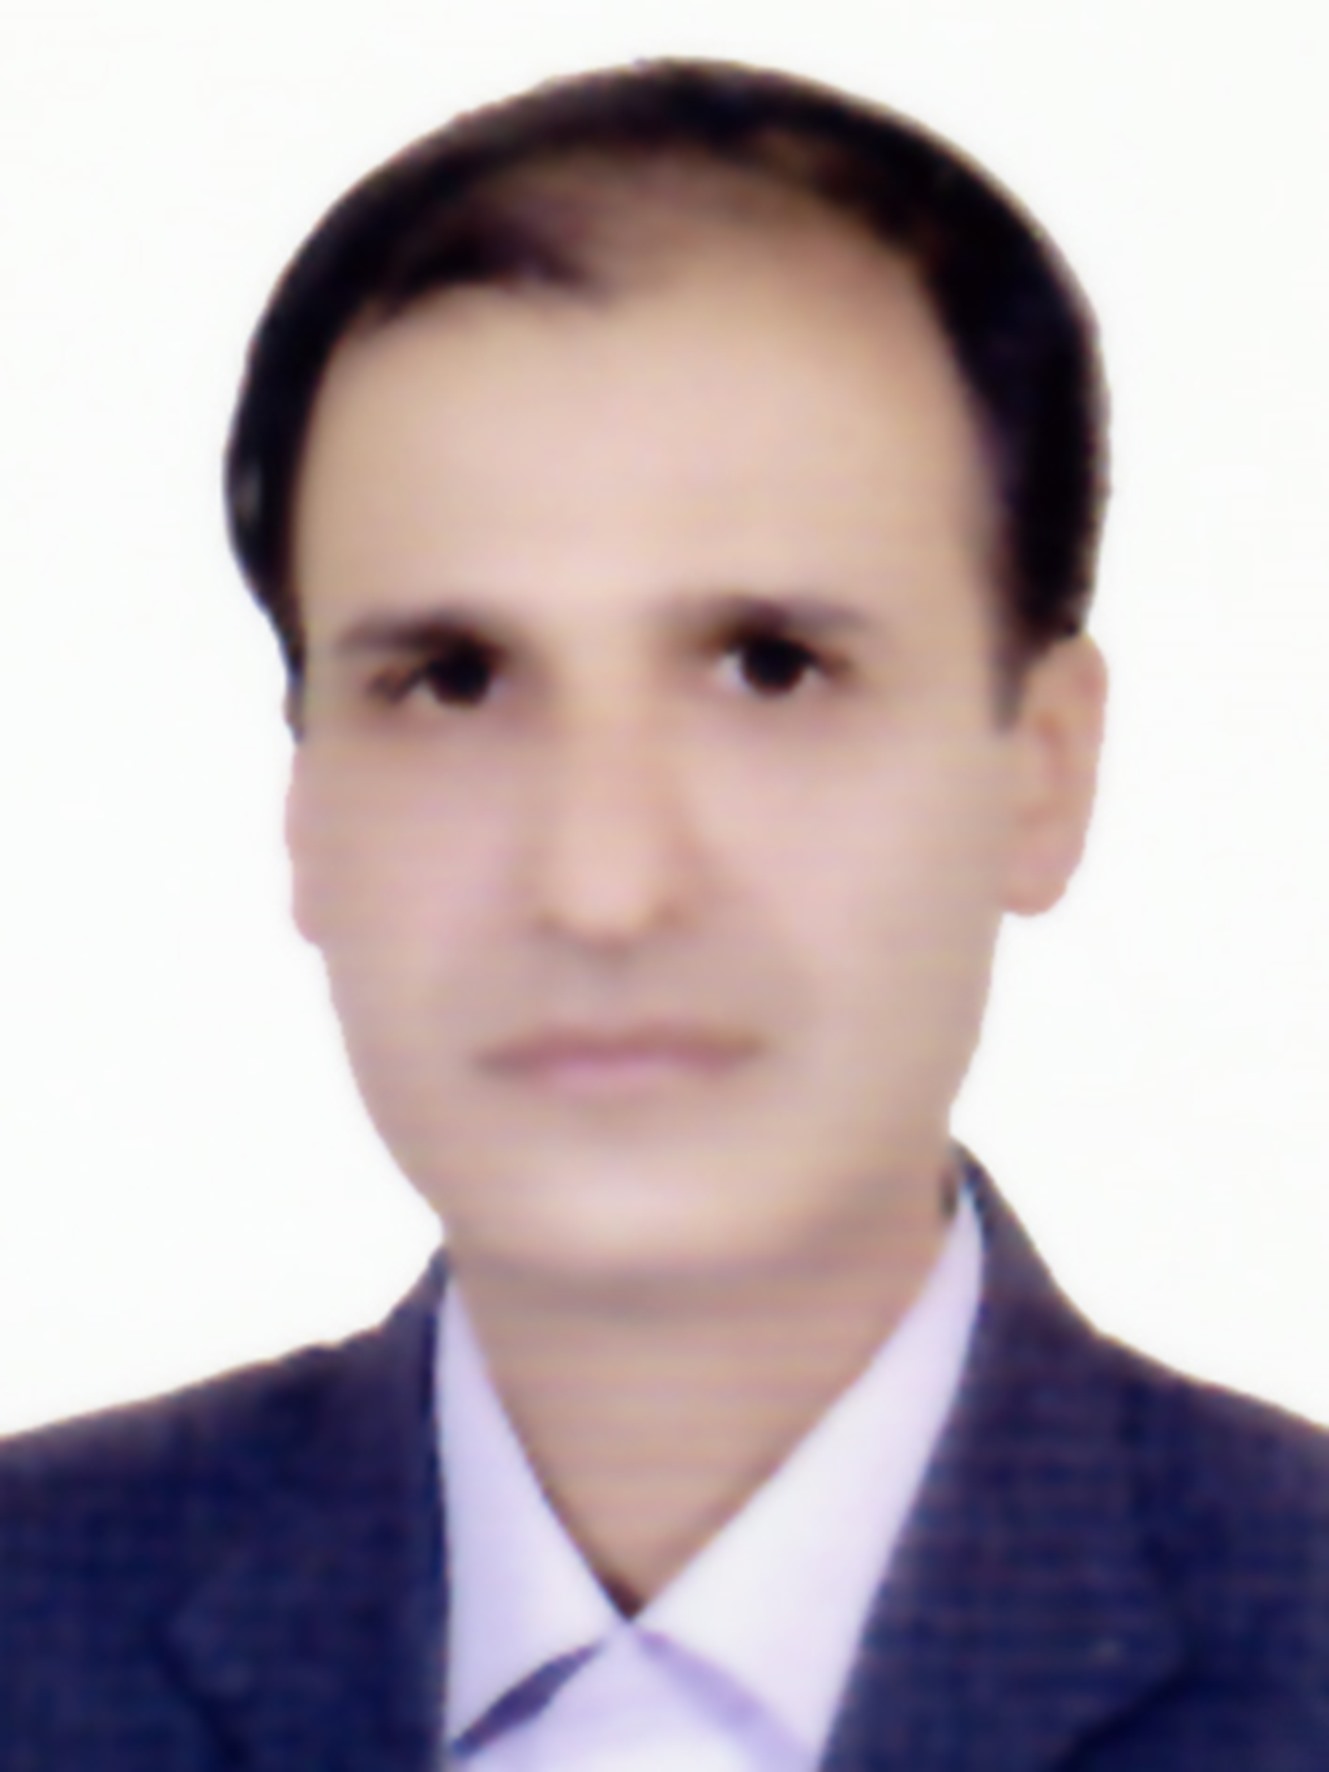 دکتر مهران حکیم زاده